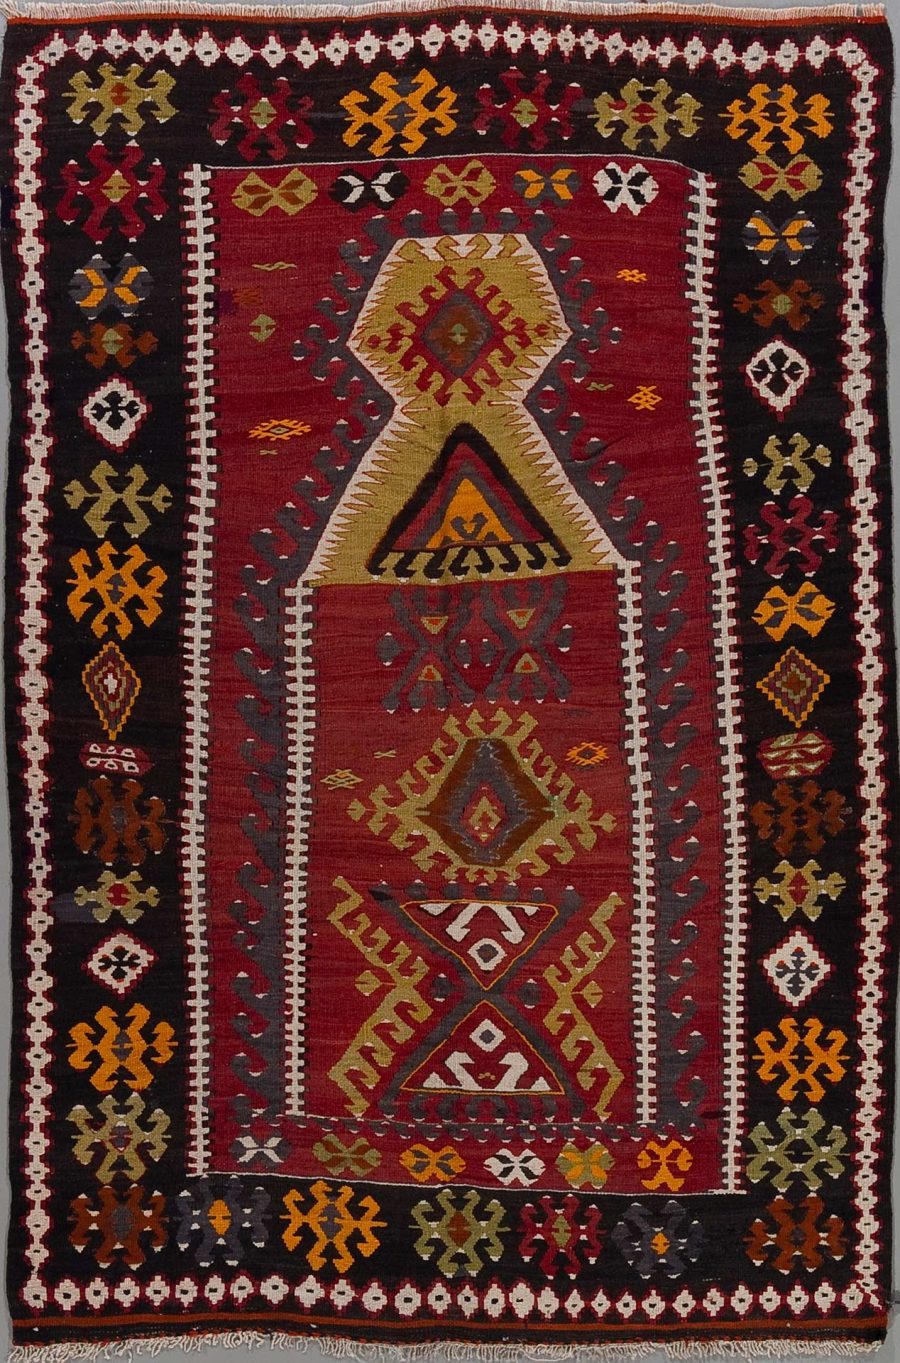 Handgewebter Teppich mit traditionellen Mustern in Rot-, Gelb-, Weiß- und Schwarztönen, zentrales geometrisches Design umgeben von dekorativen Bordüren.